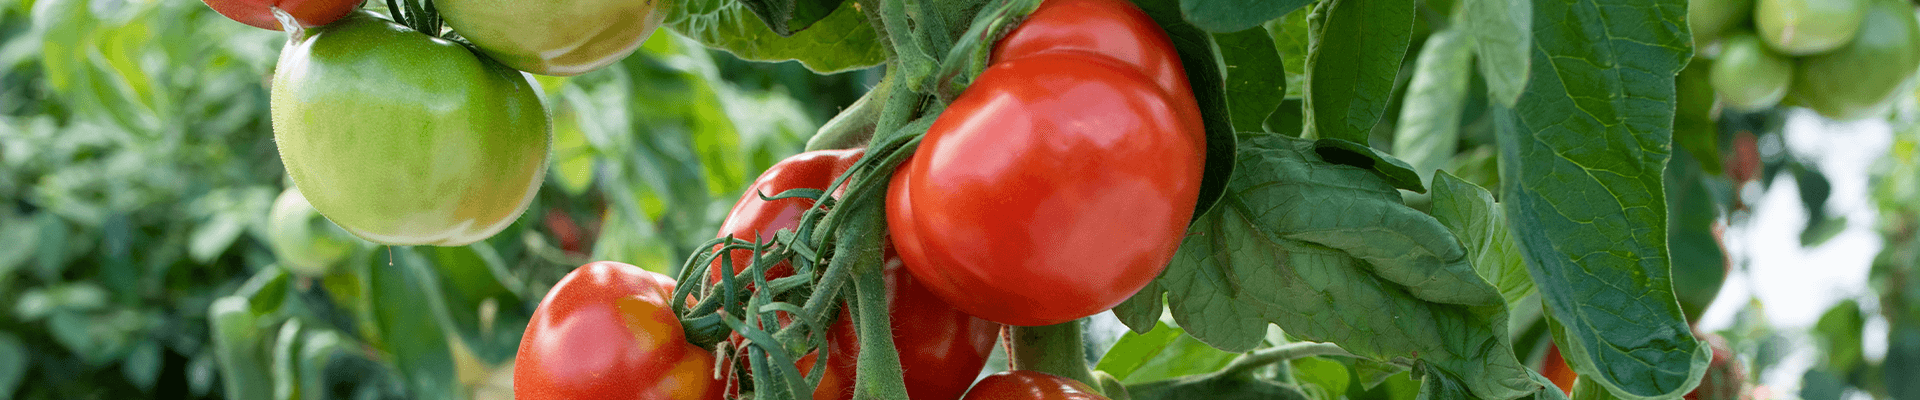 Groenten tomaten